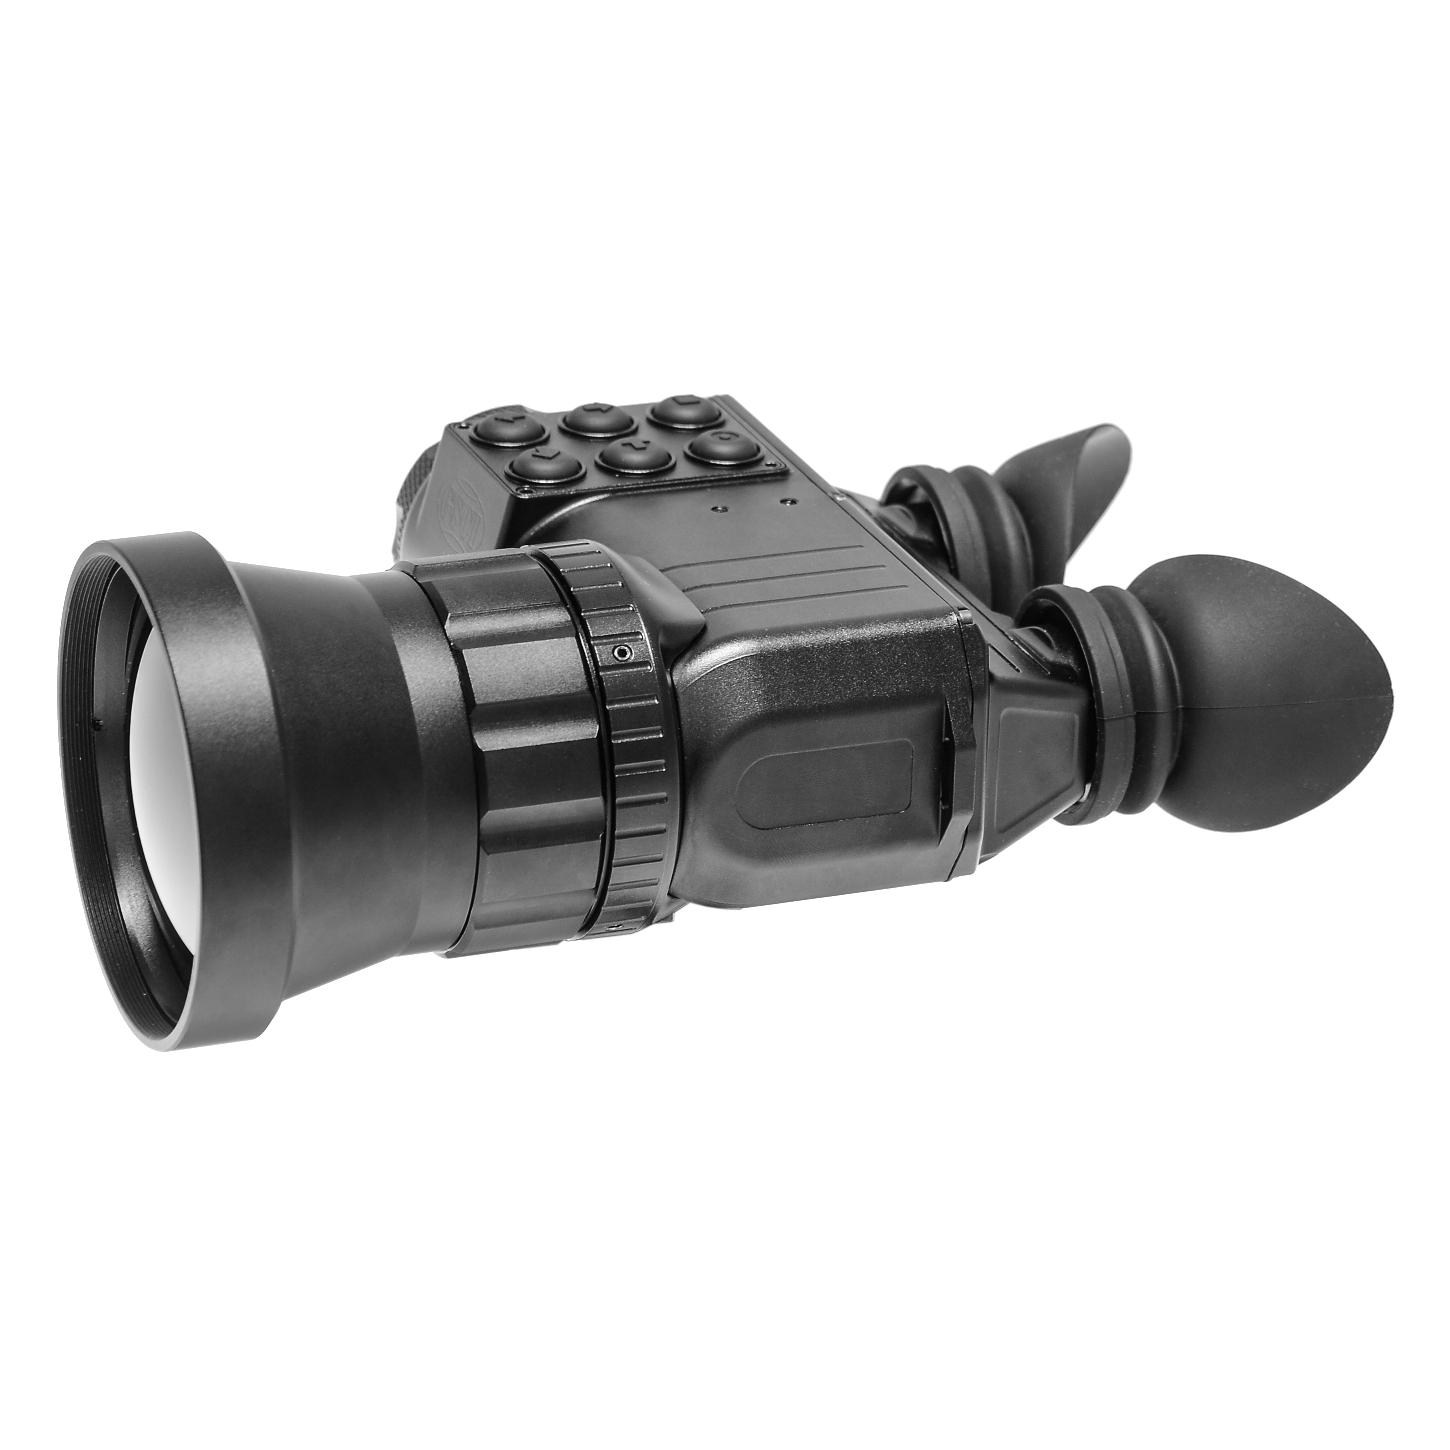 TIB-5075-MOD-64 Elite Grade Long-Range Binoculars